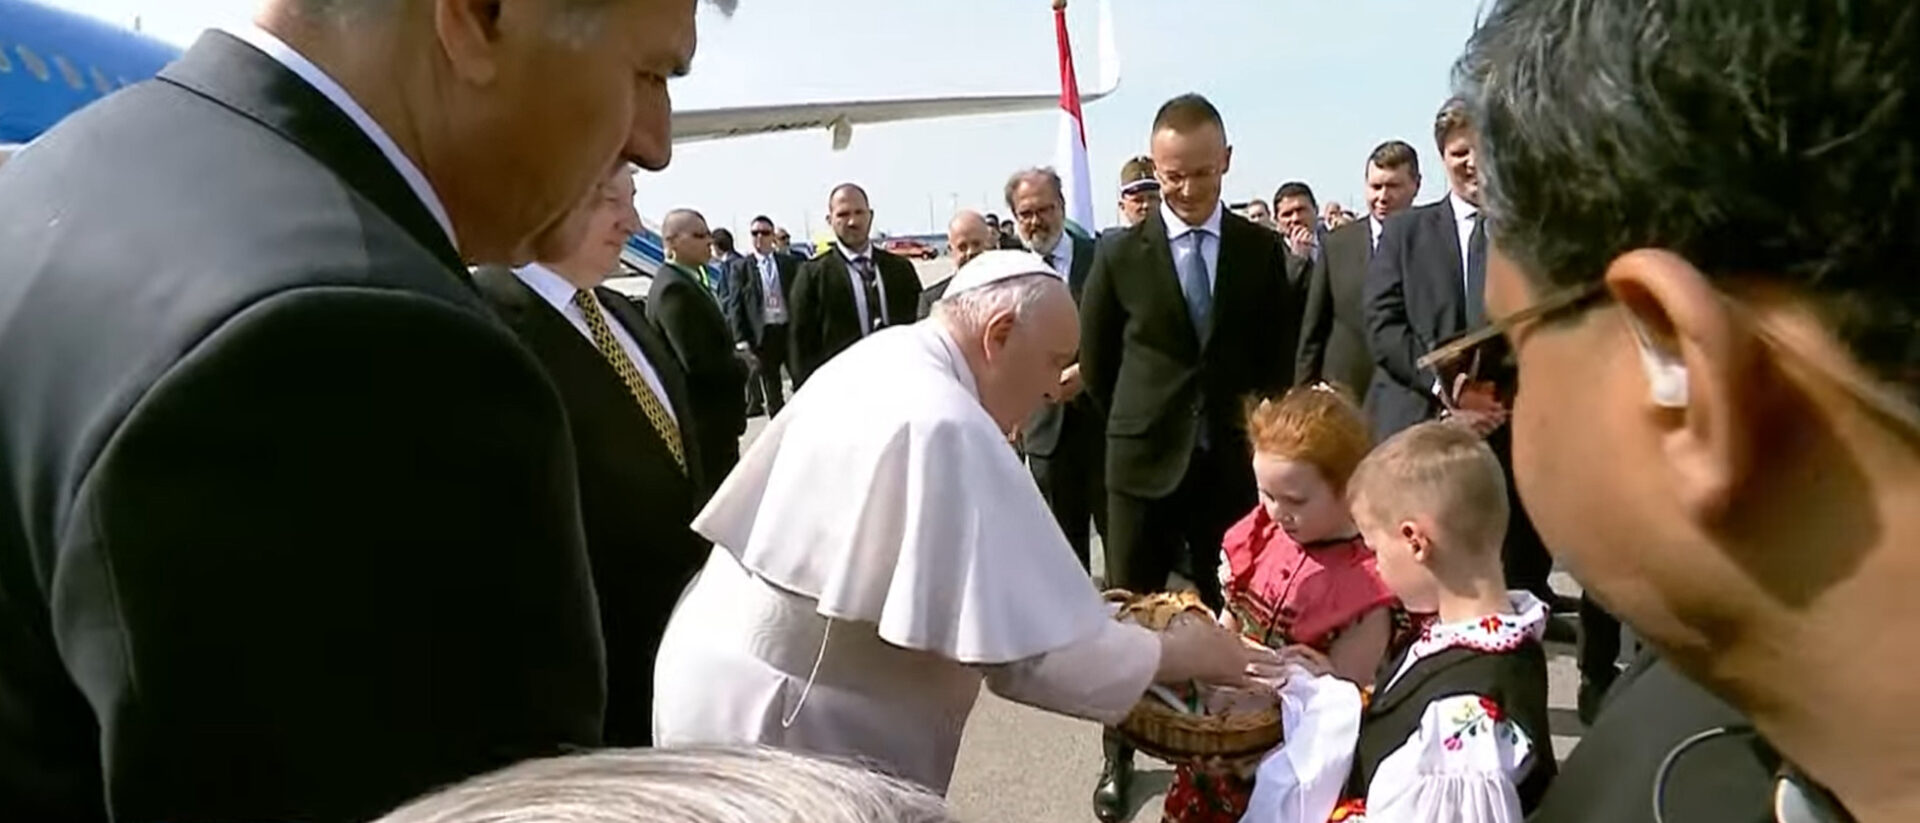 Zwei ungarische Kinder begrüssen Papst Franziskus nach der Landung auf dem Flughafen.